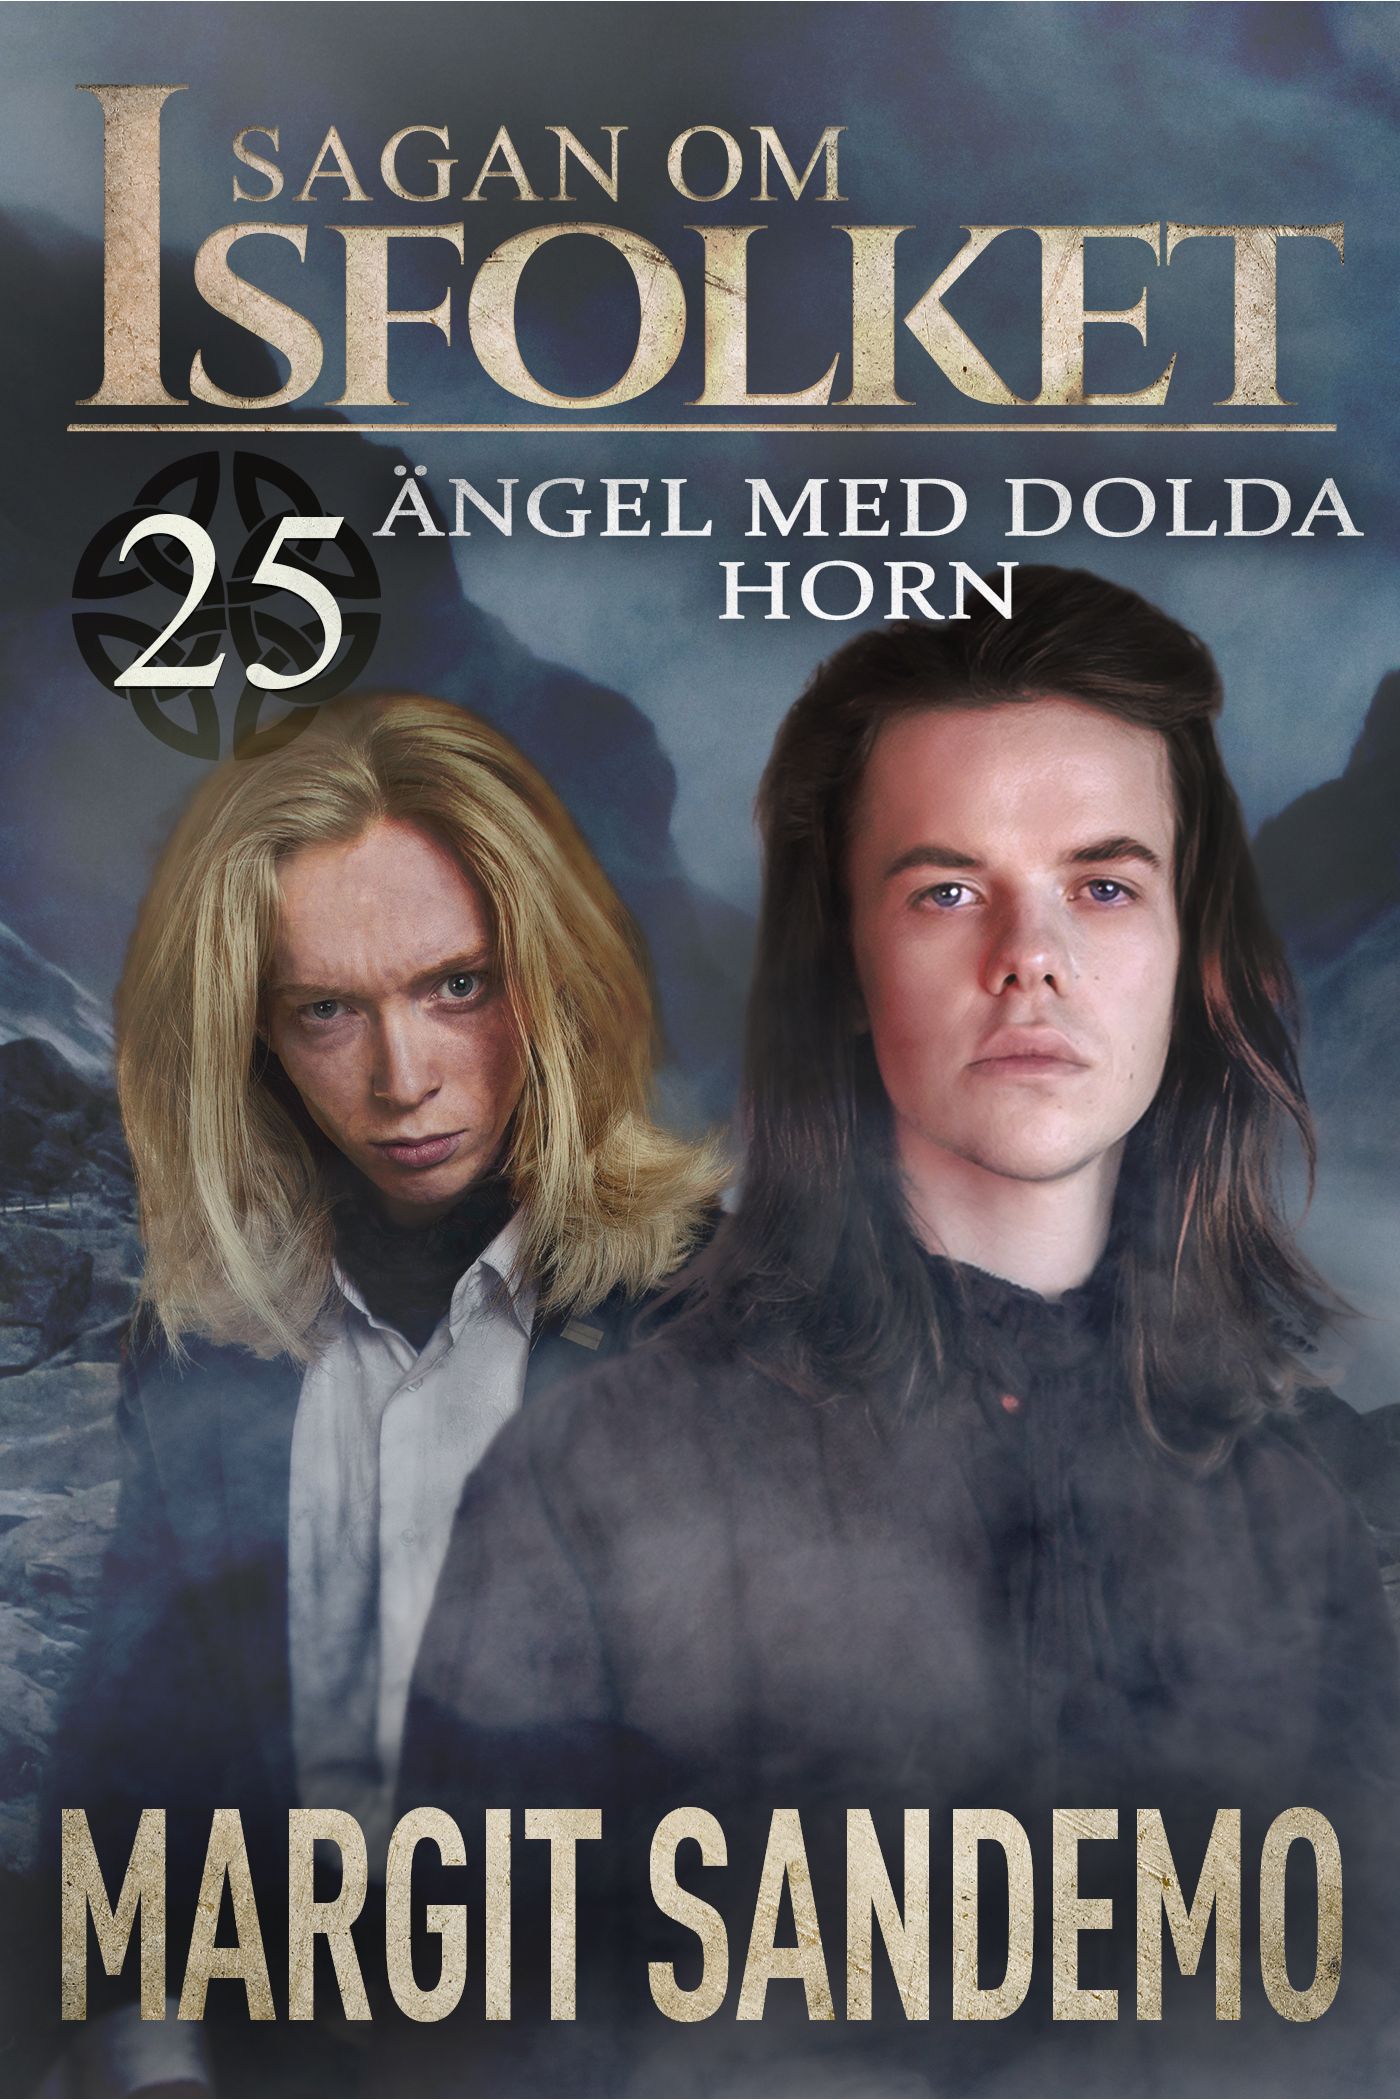 Ängel med dolda horn: Sagan om Isfolket 25, e-bog af Margit Sandemo